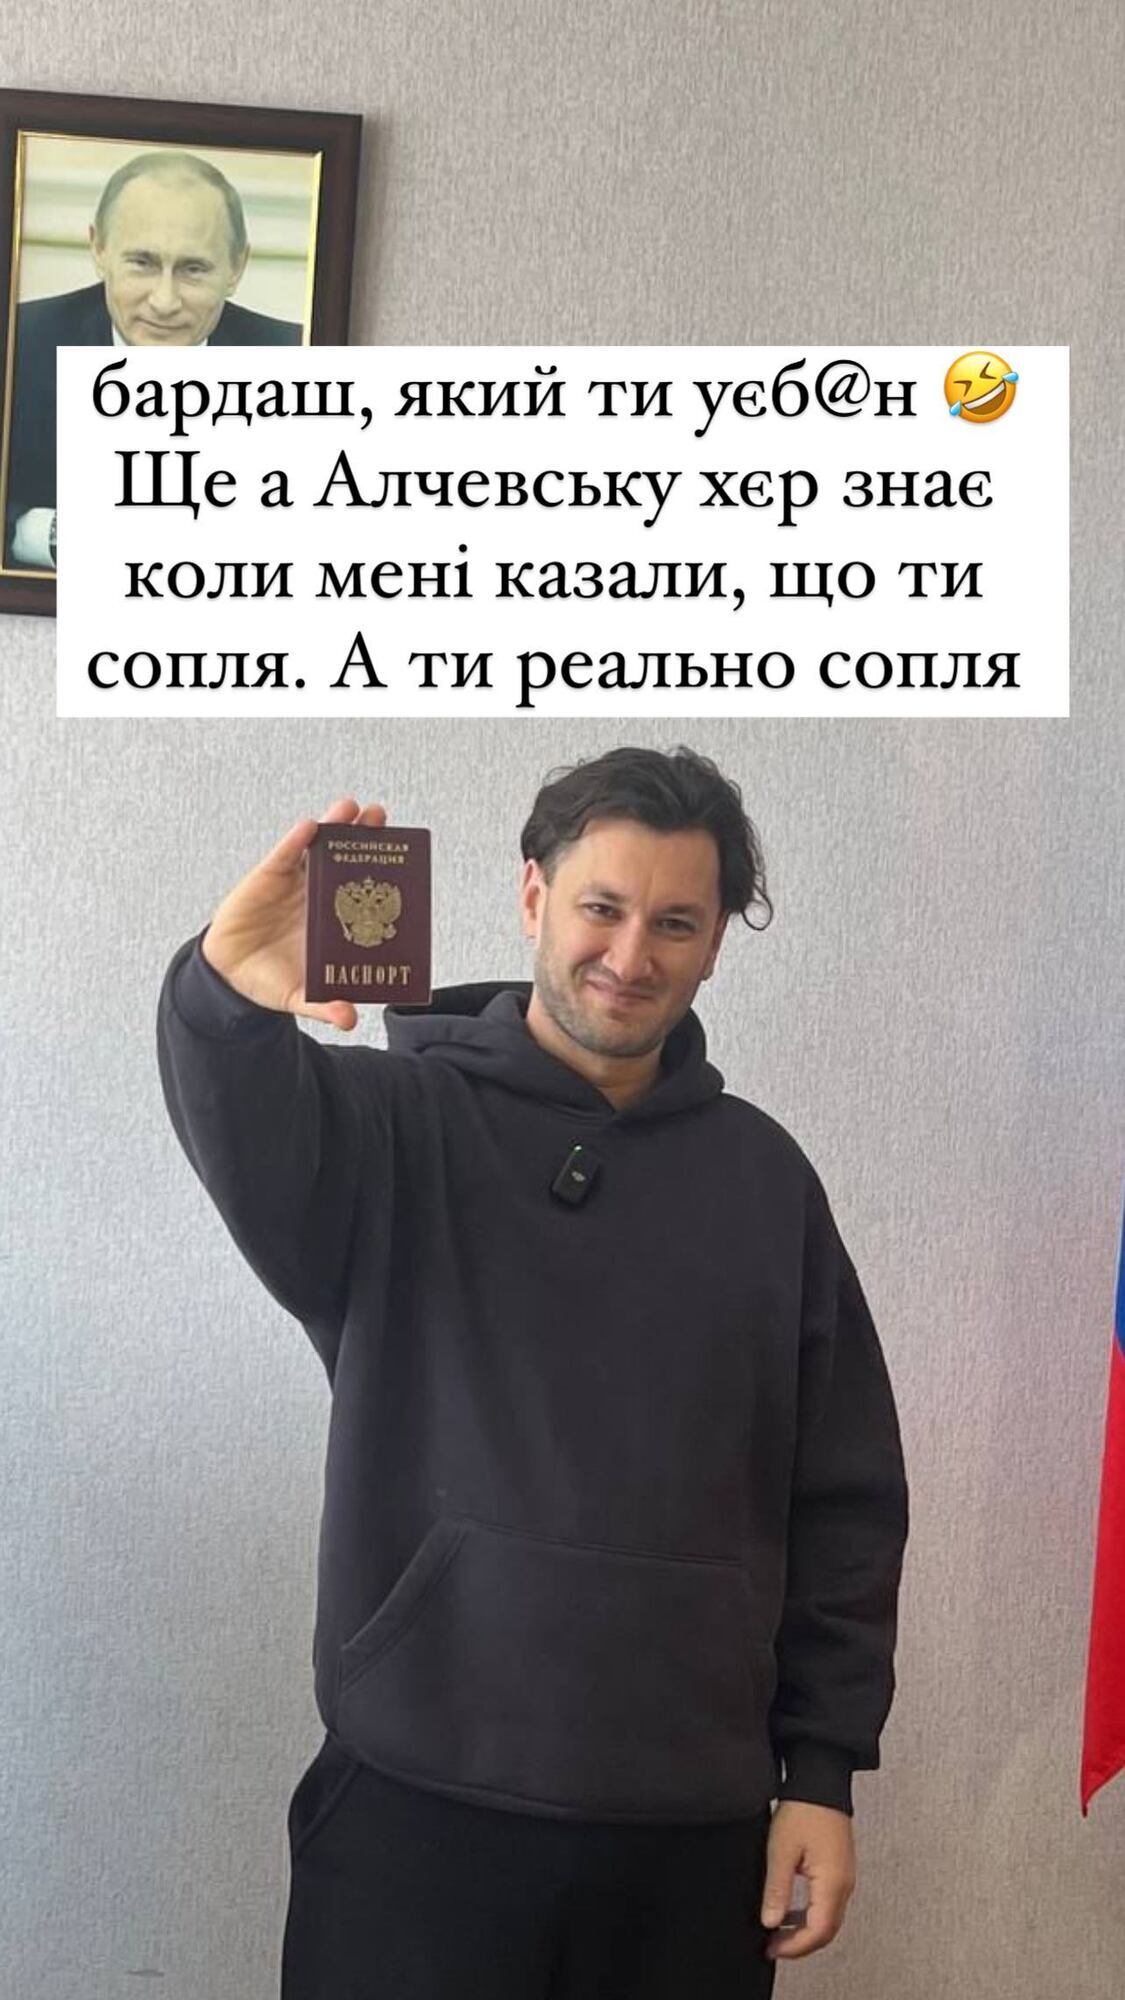 Украинский продюсер Юрий Бардаш получил российский паспорт и похвастался им на фоне портрета Путина